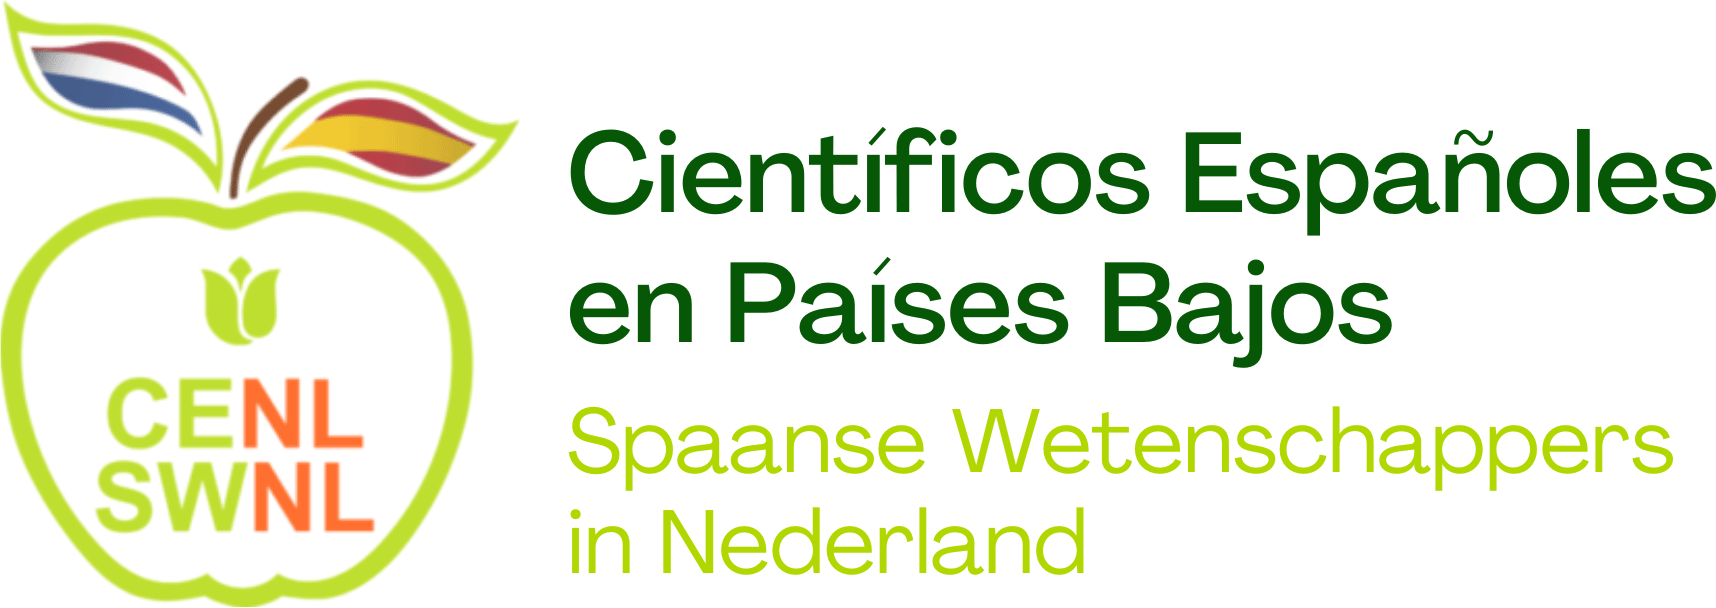 Asociación de Científicos de España en los Países Bajos